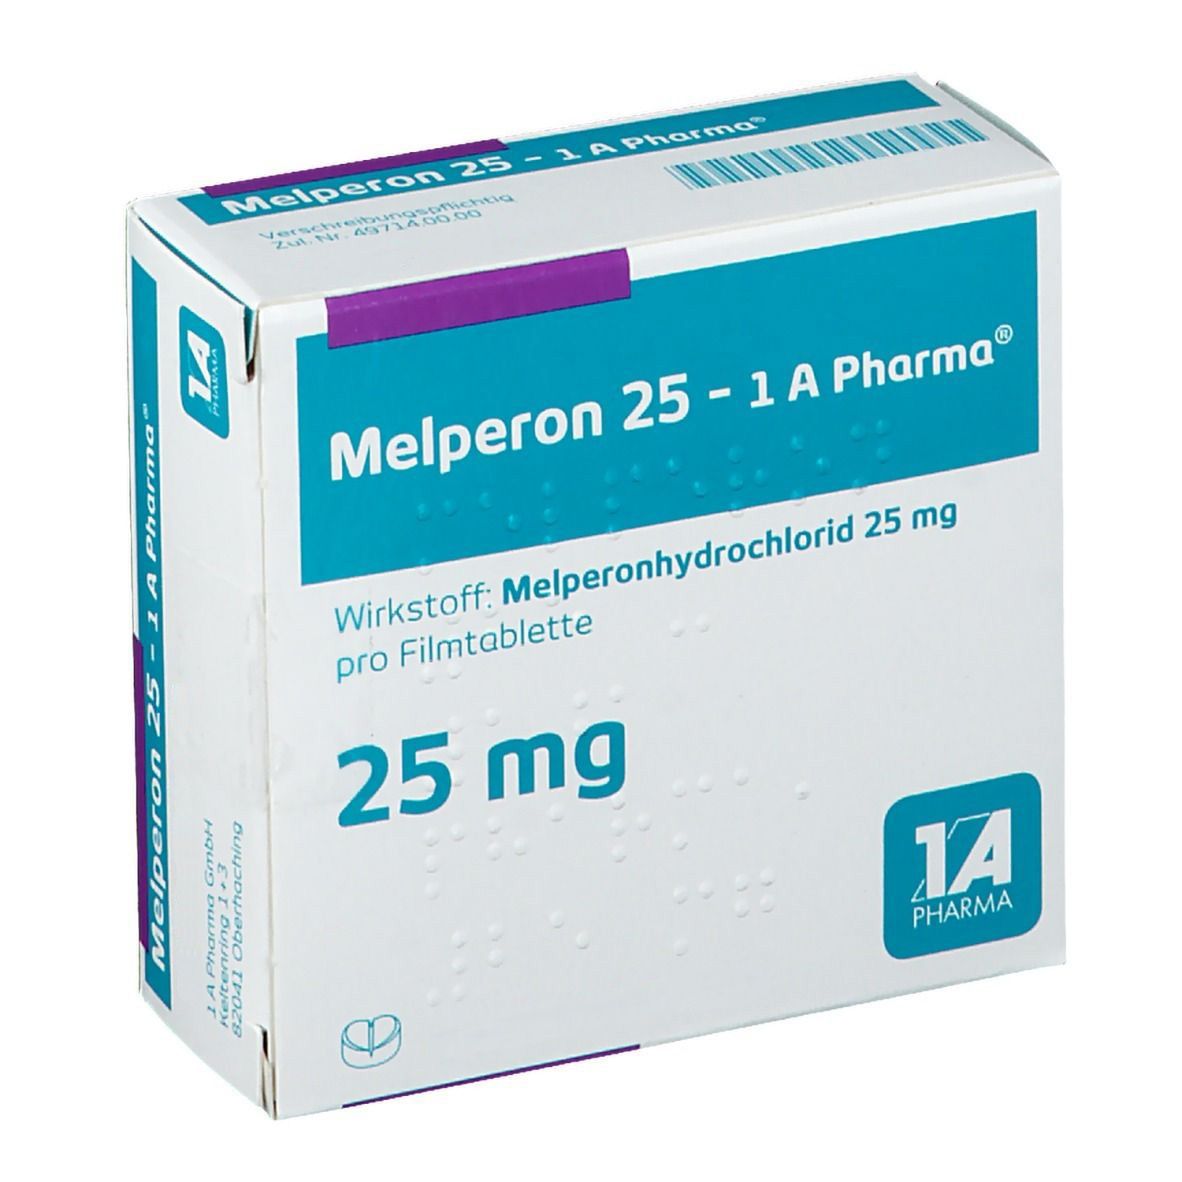 Melperon 25 - 1 A Pharma®